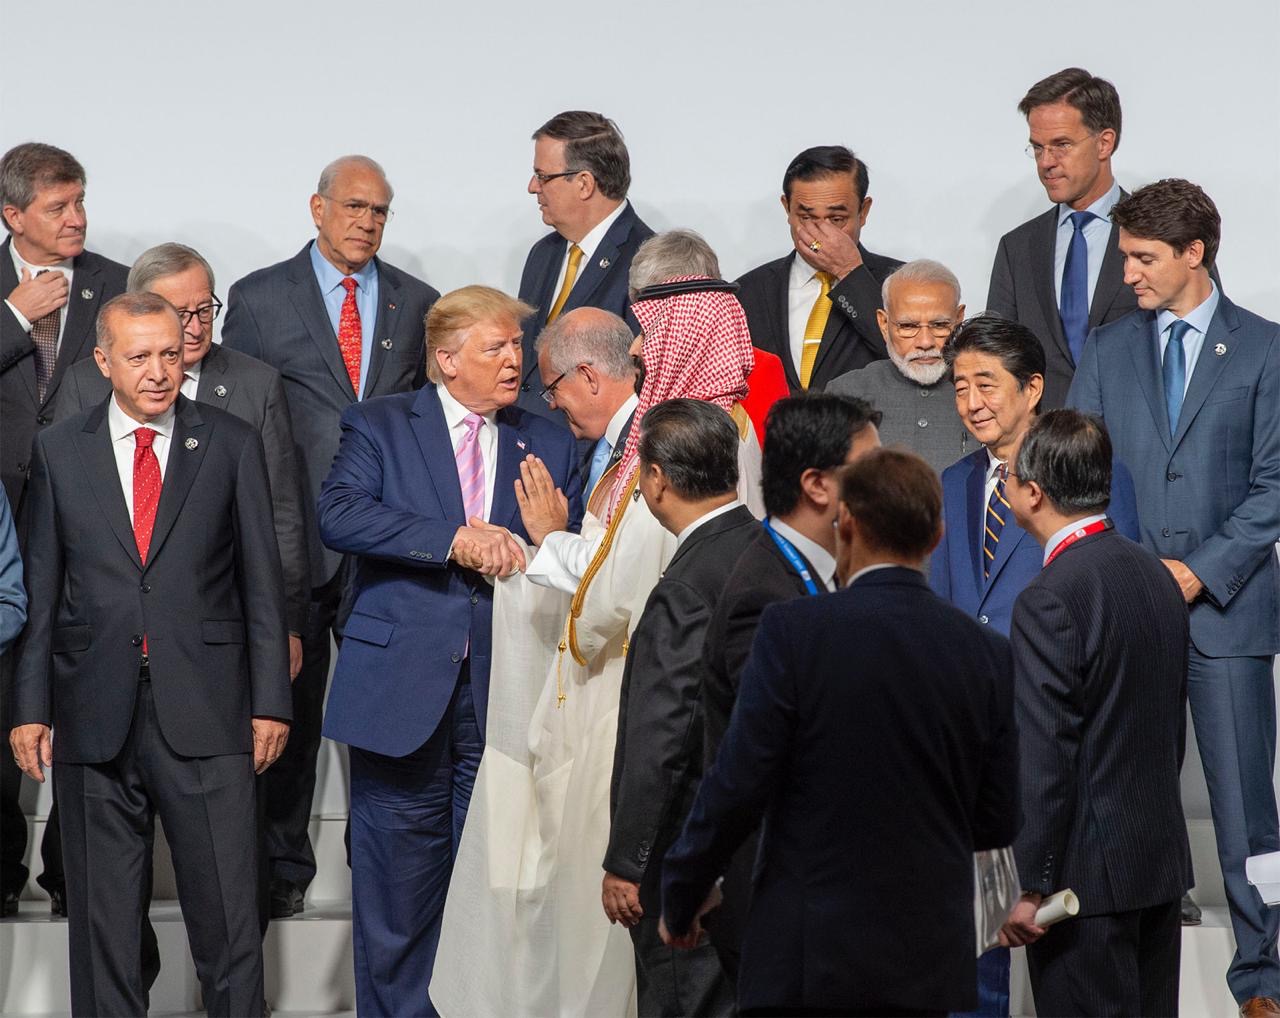 شاهد الفيديو.. قادة العالم حول ولي العهد في G20